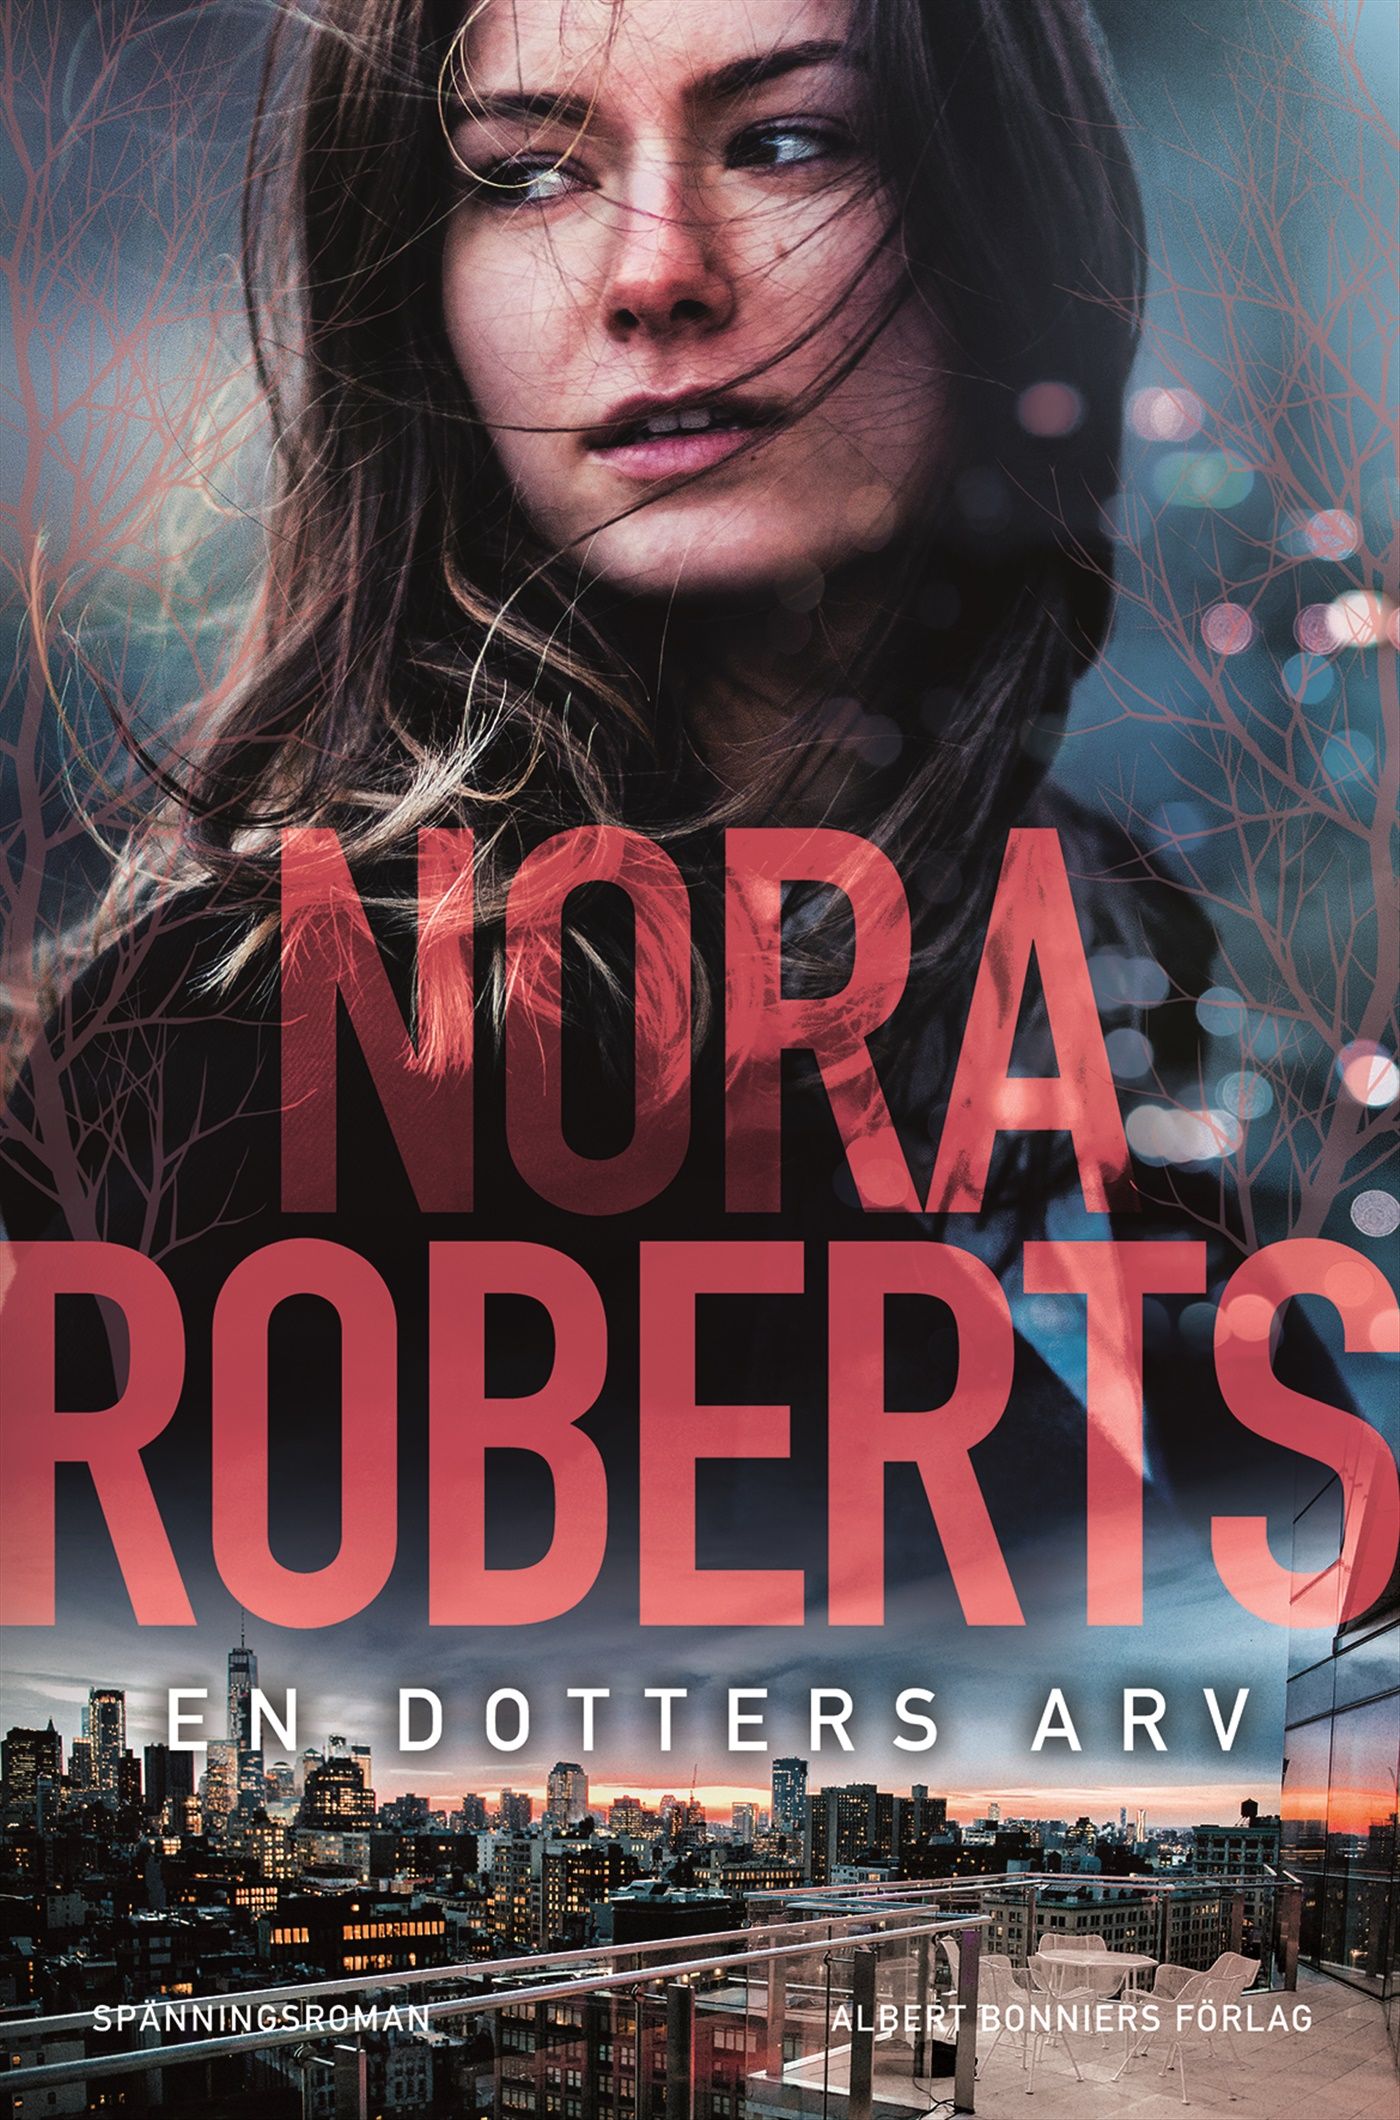 En dotters arv, e-bog af Nora Roberts